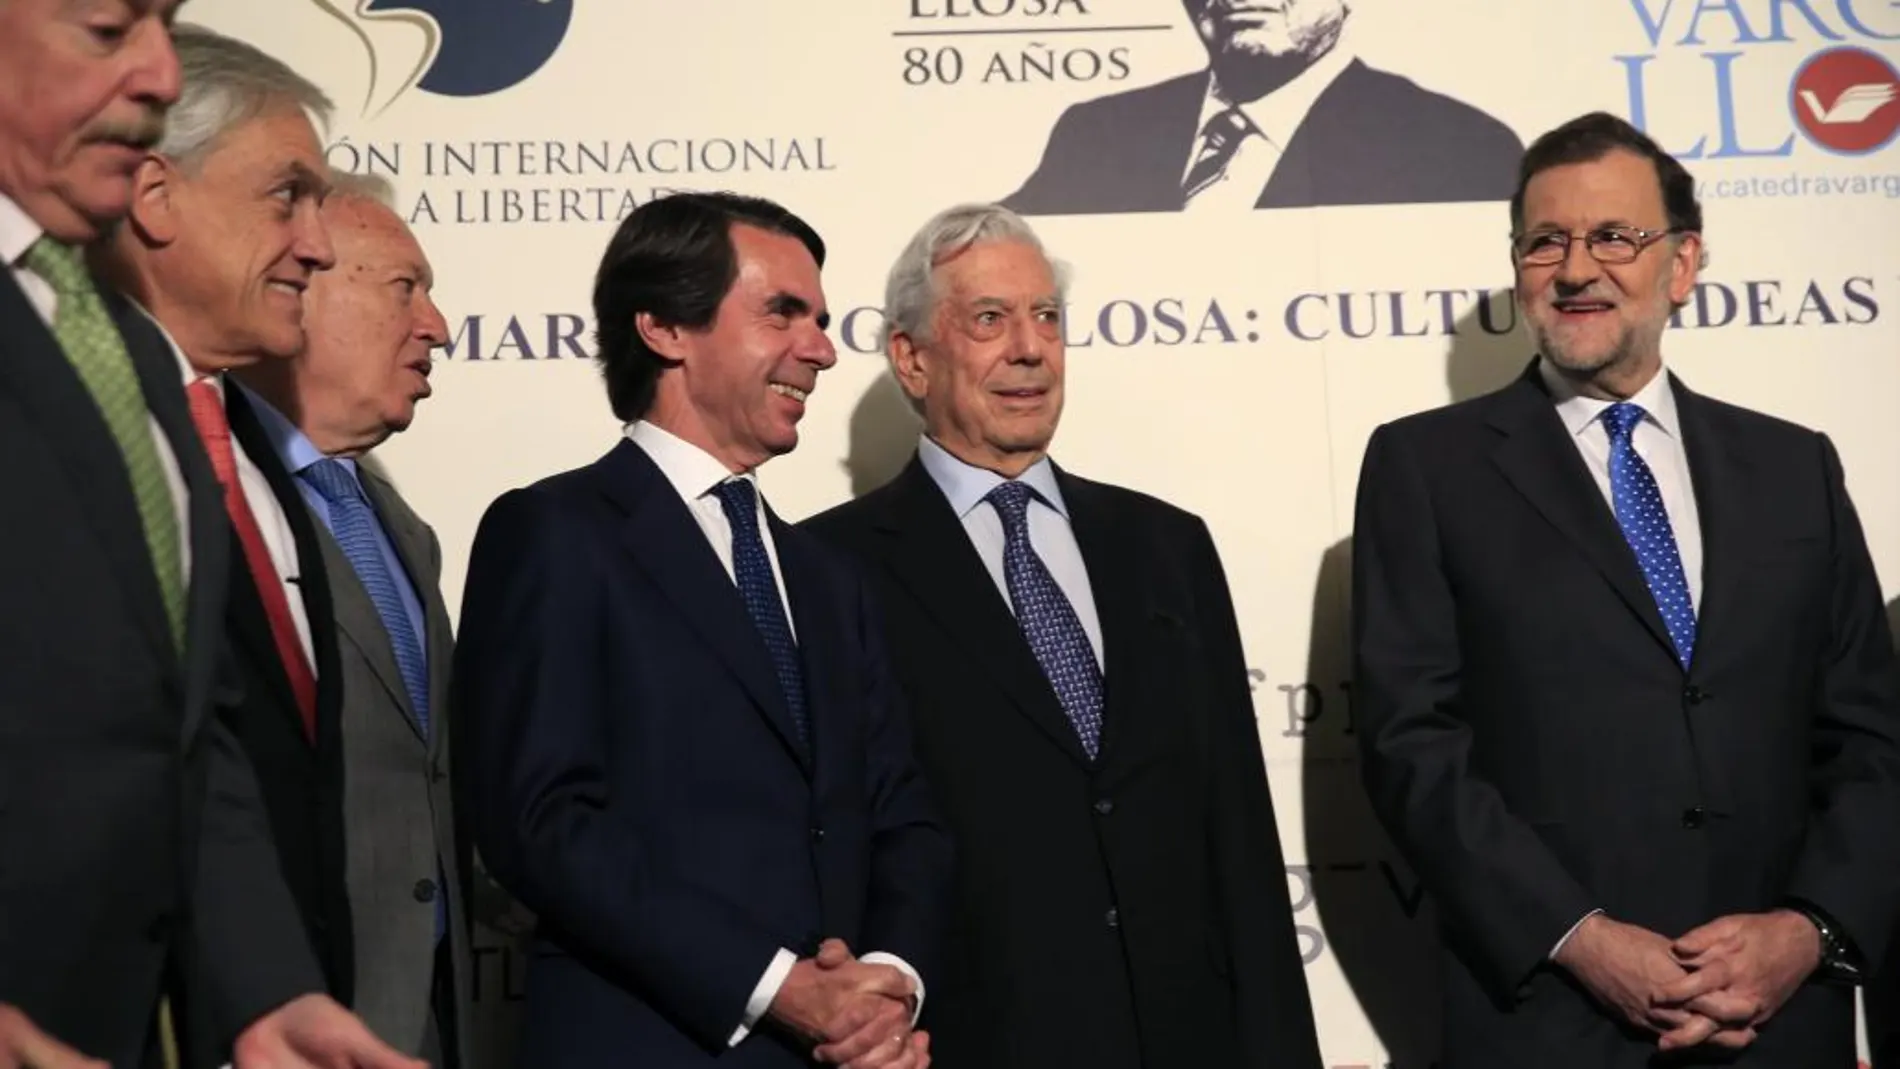 Mariano Rajoy, Andrés Pastrana, Sebastián Piñera, José Manuel García-Margallo, José María Aznar y Mario Vargas Llosa